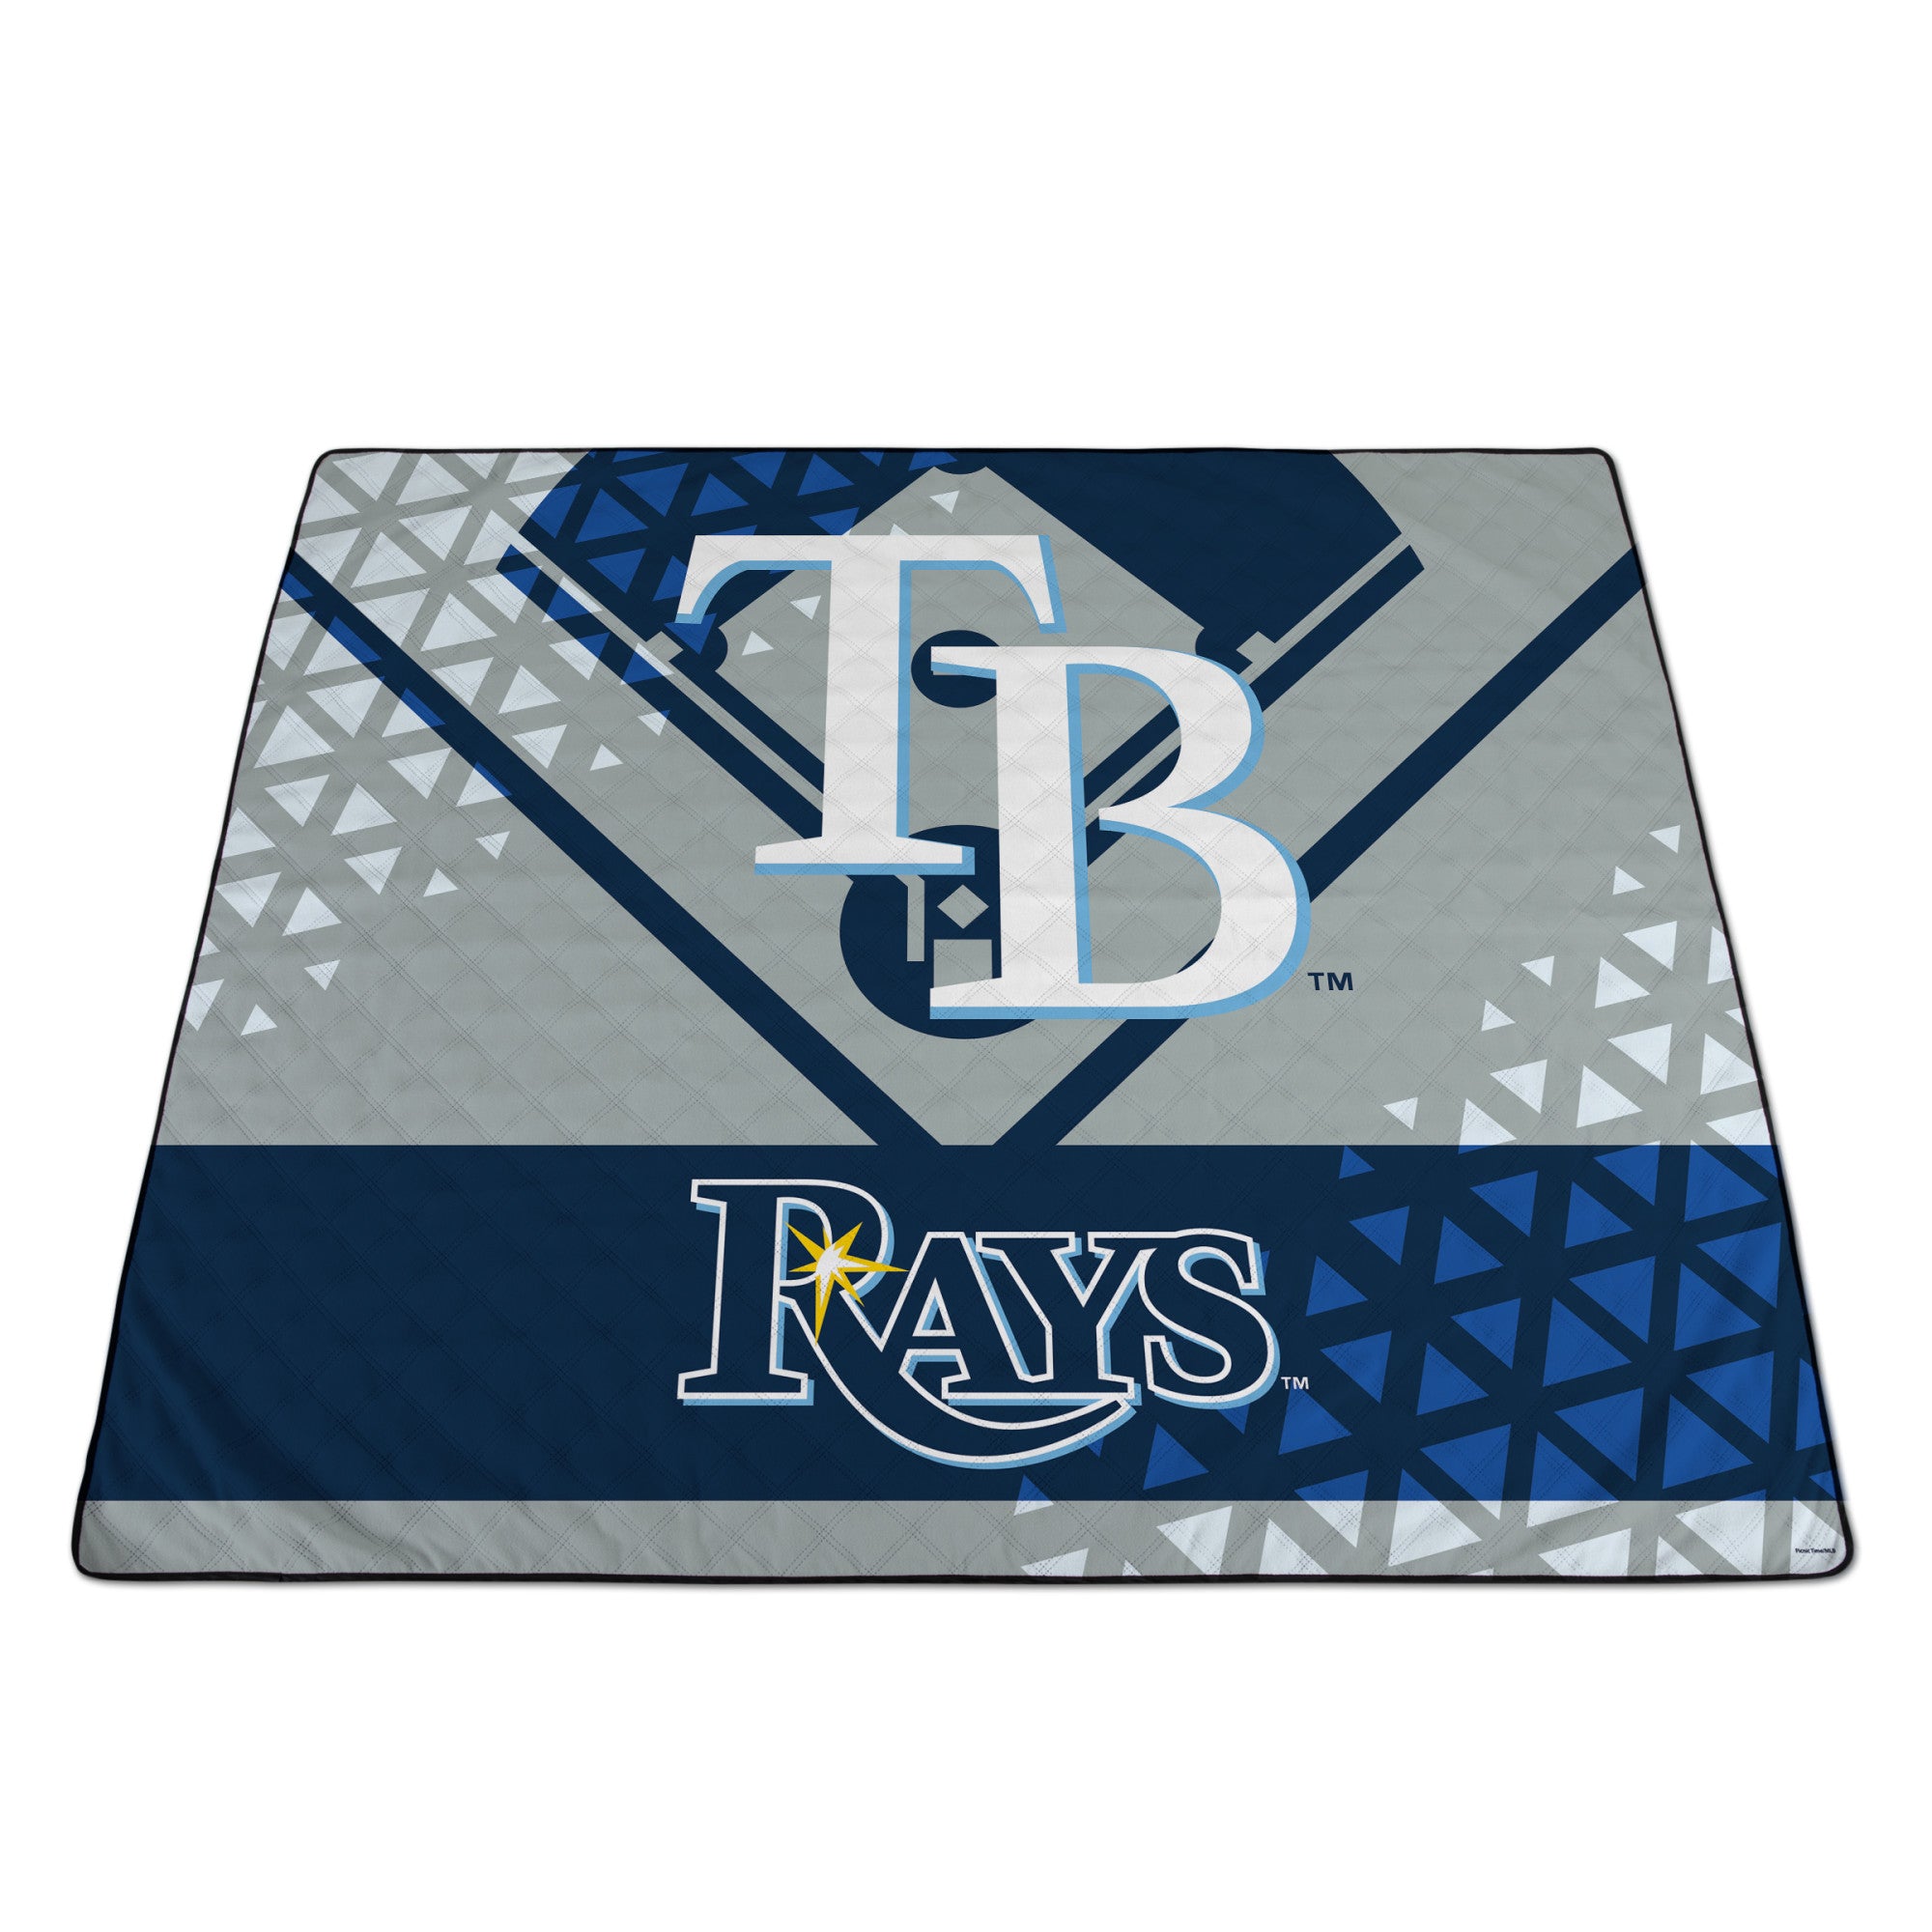 Tampa Bay Rays - Impresa Picnic Blanket